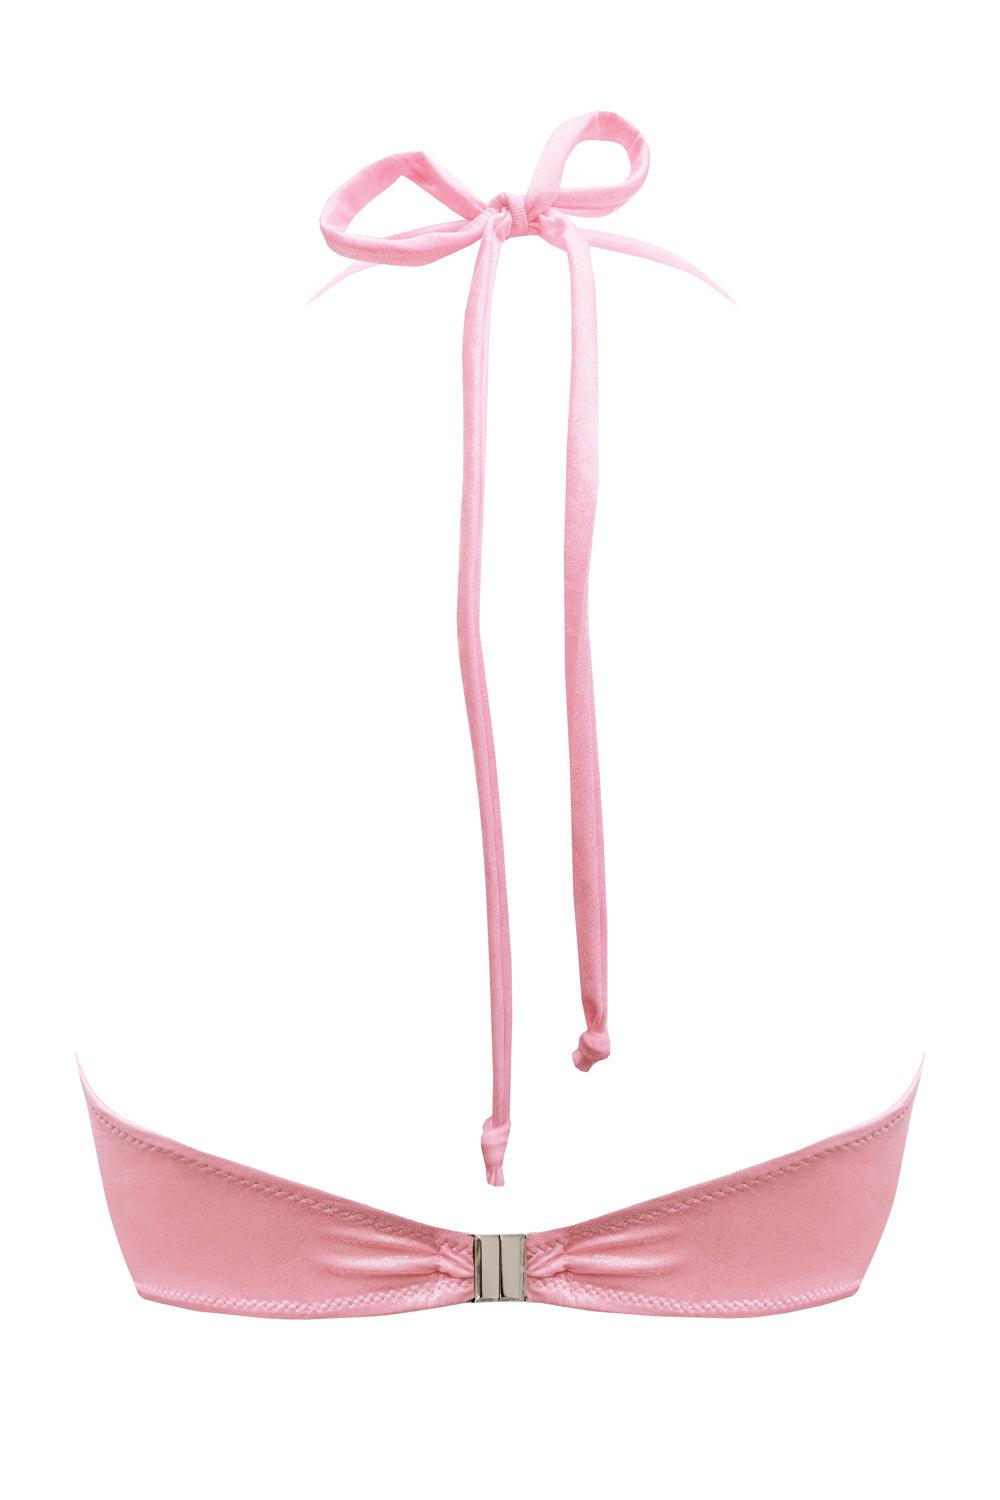 Titaniya Rose bikini top - Bikini top by yesUndress. Shop on yesUndress